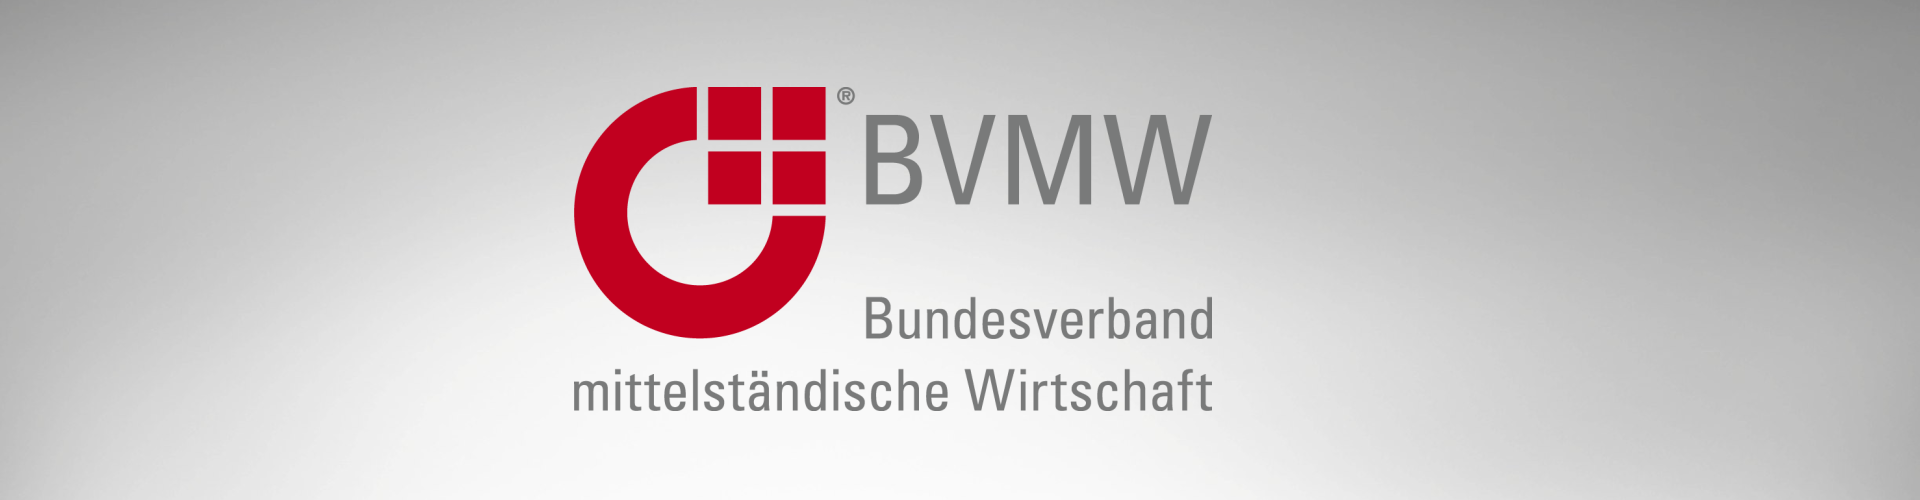 Bundesverband Mittelständische Wirtschaft (BVMW)